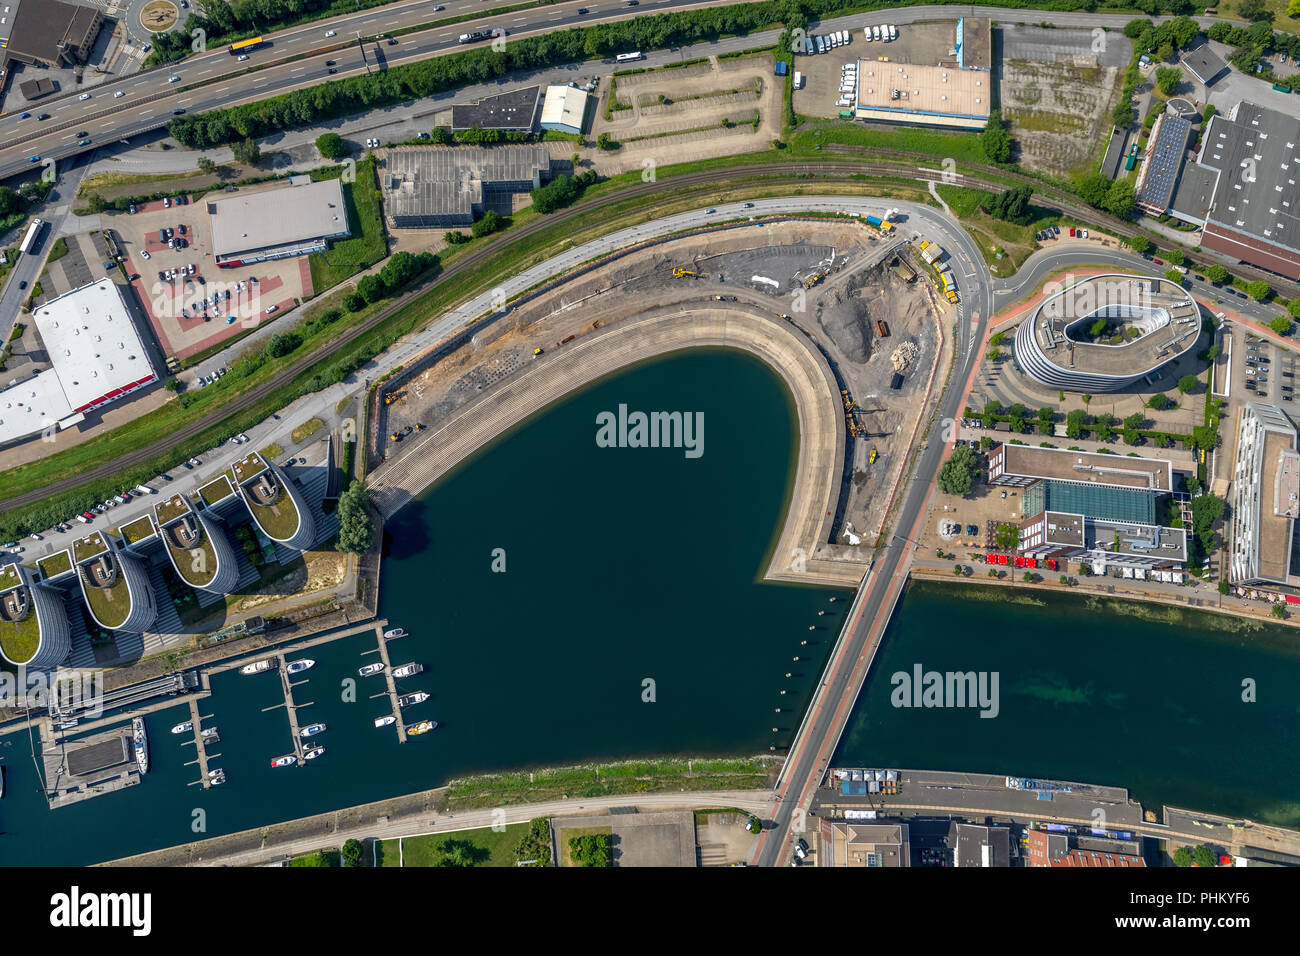 Aerial view, Am Innenhafen, Holzhafen,Schiffswendeplatz im Innenhafen between Marina and Portsmouth Damm, Techniker Krankenkasse (TK),HAVI Global Solu Stock Photo